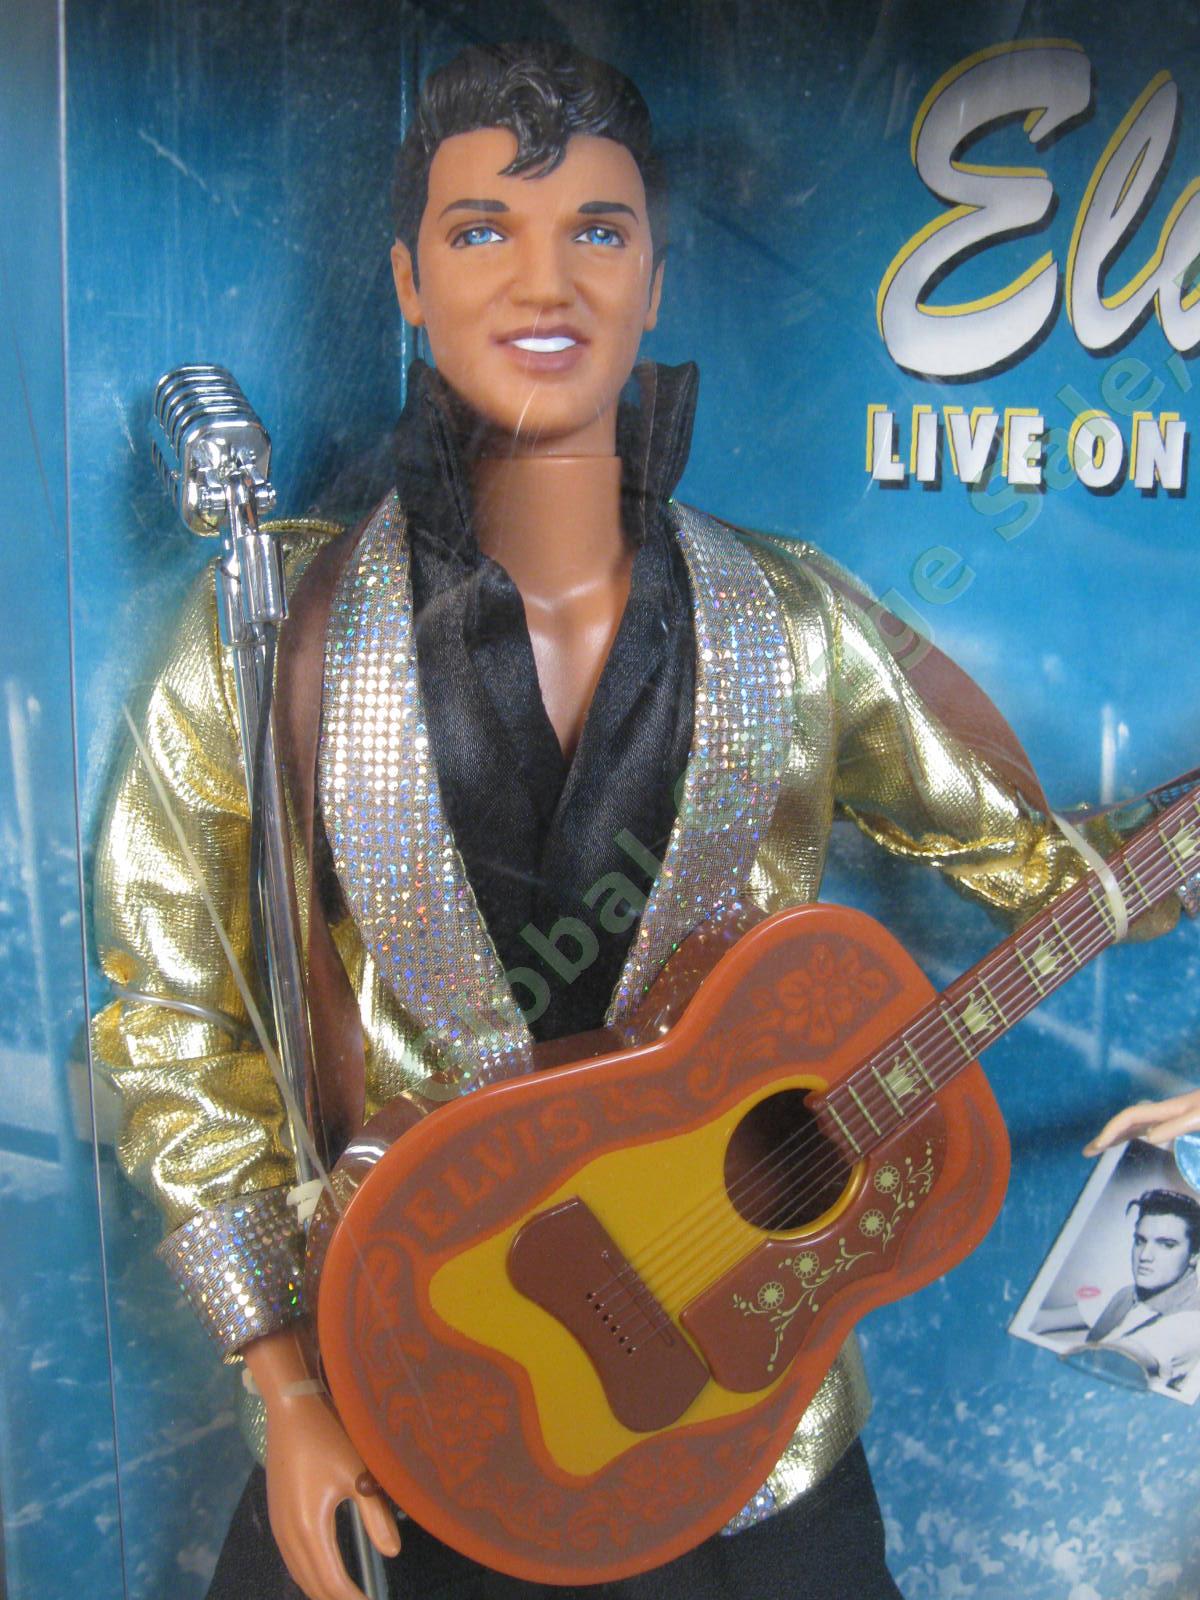 1996 Barbie Loves Elvis Presley Live on Stage 2 Doll Gift Set 17450 1956 Tupelo 1